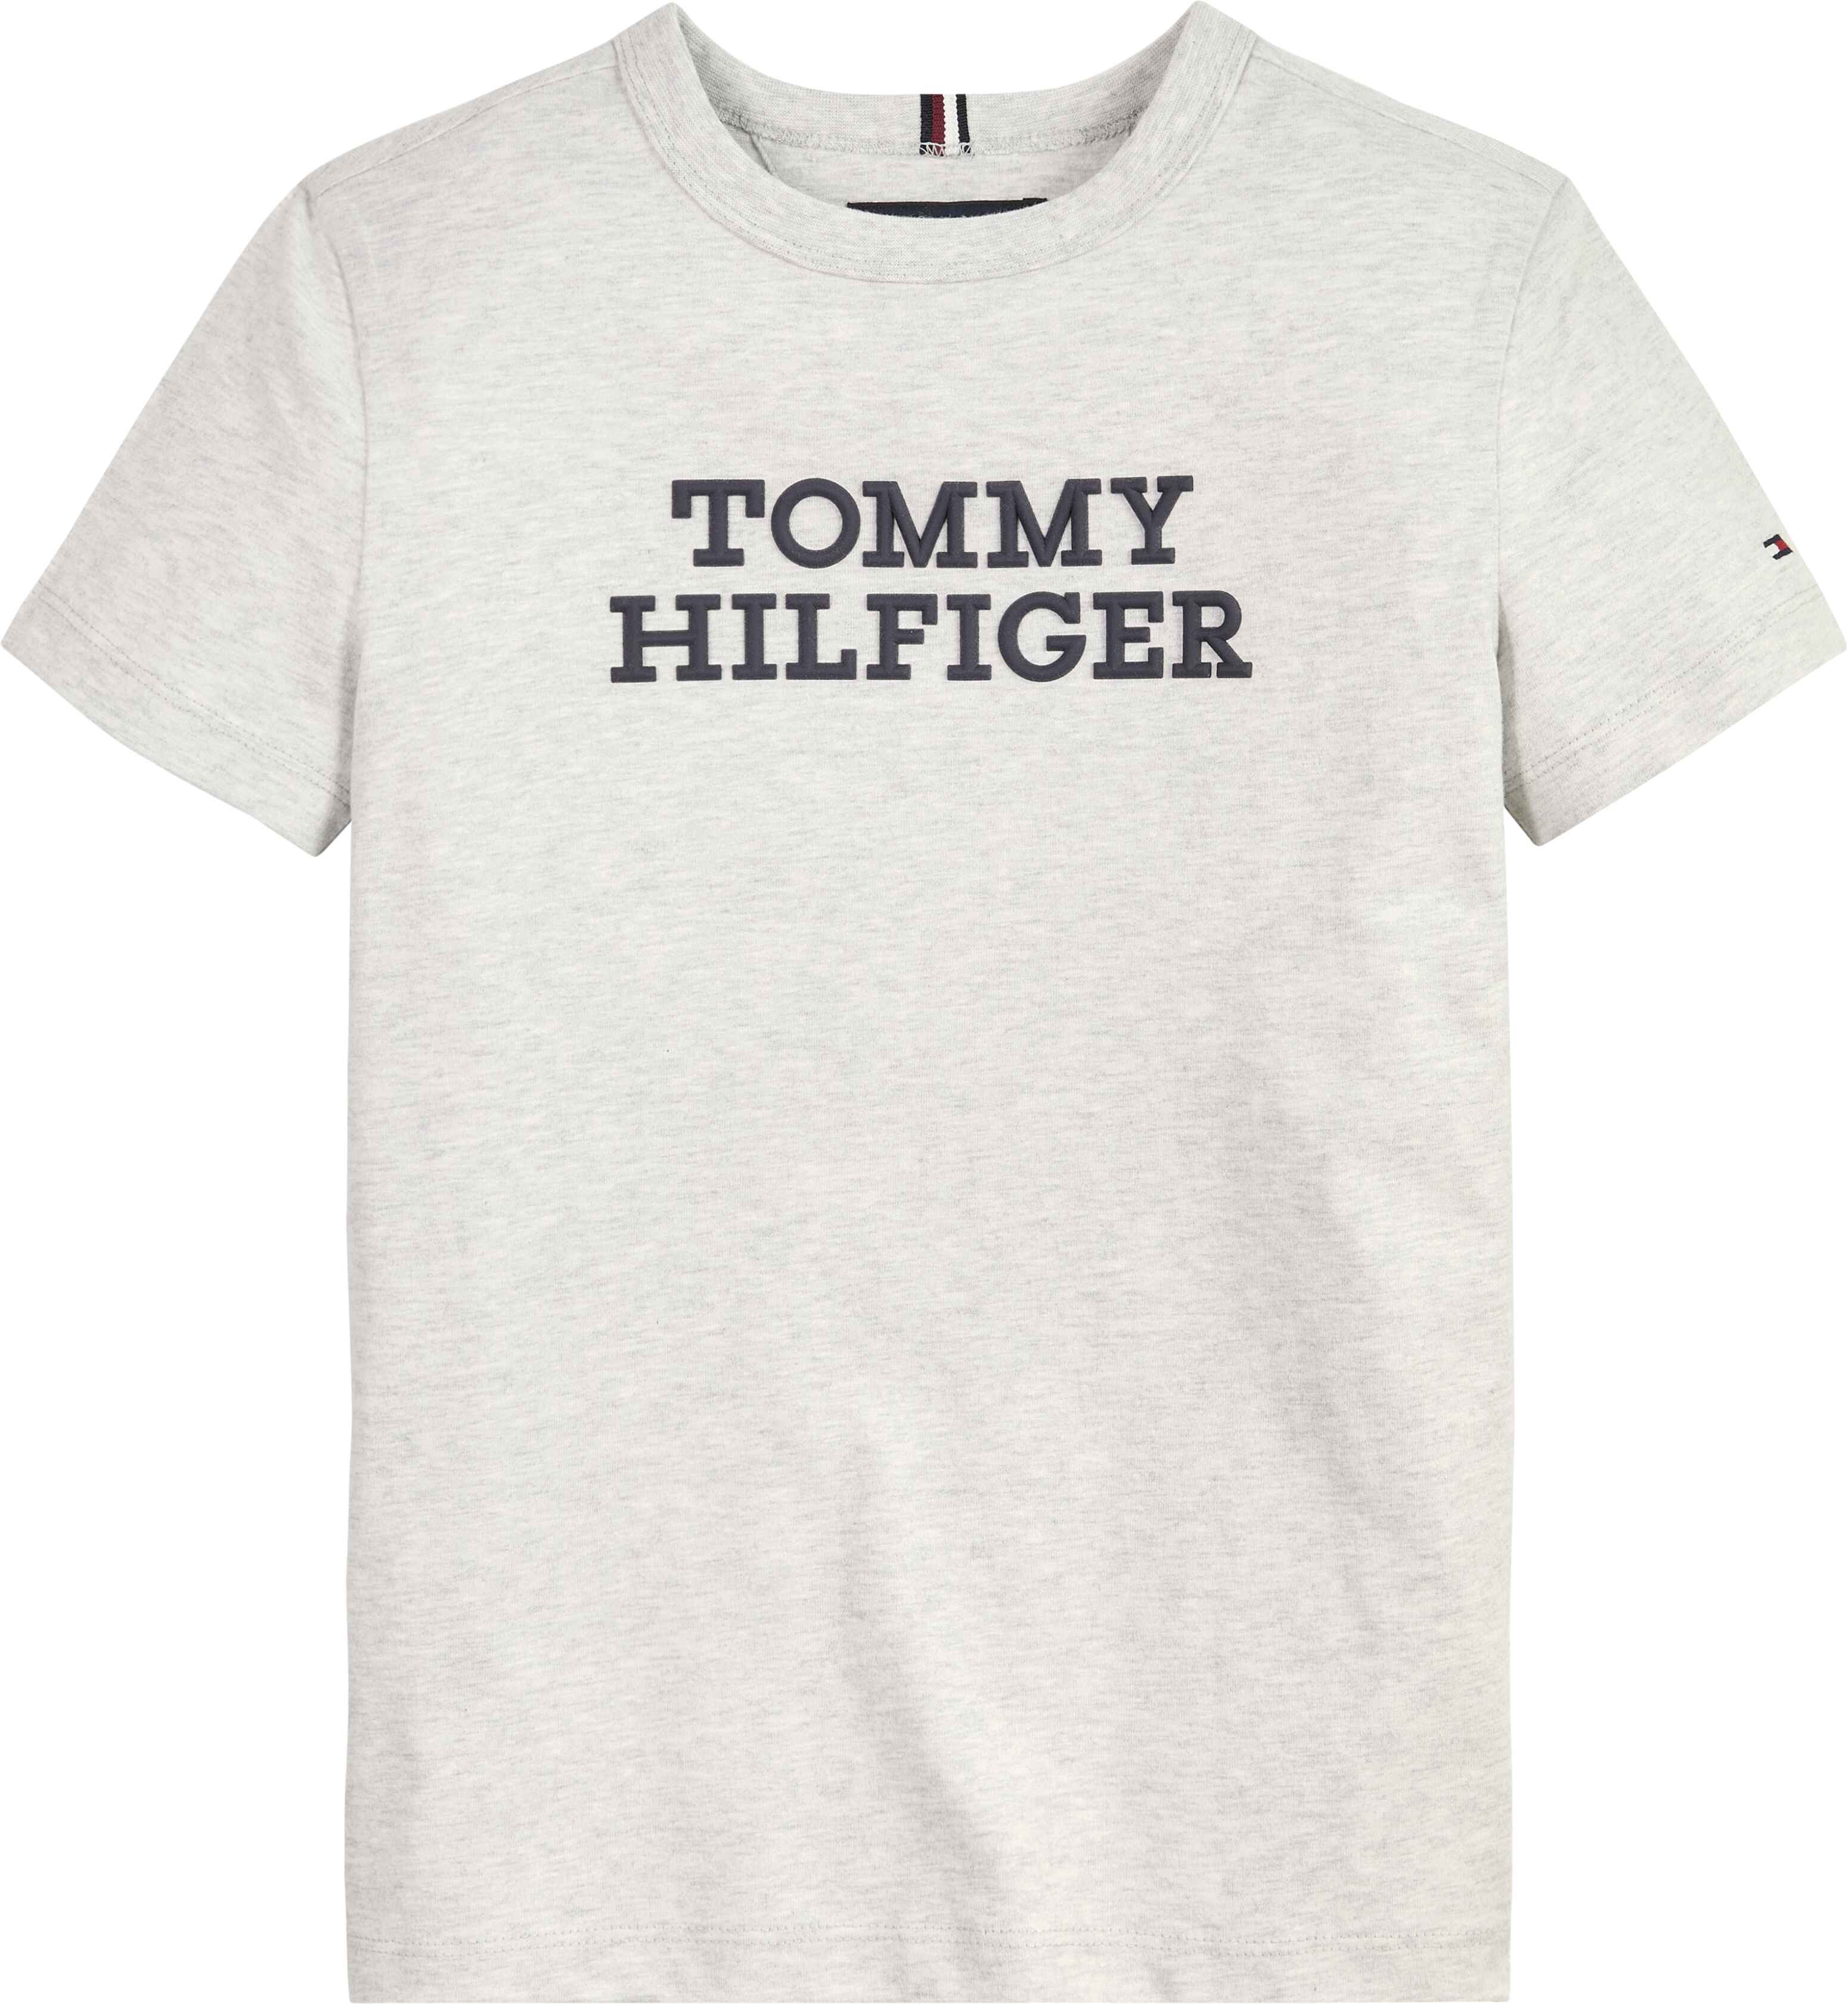 TOMMY HILFIGER - TOMMY HILFIGER LOGO TEE - KB0KB08555